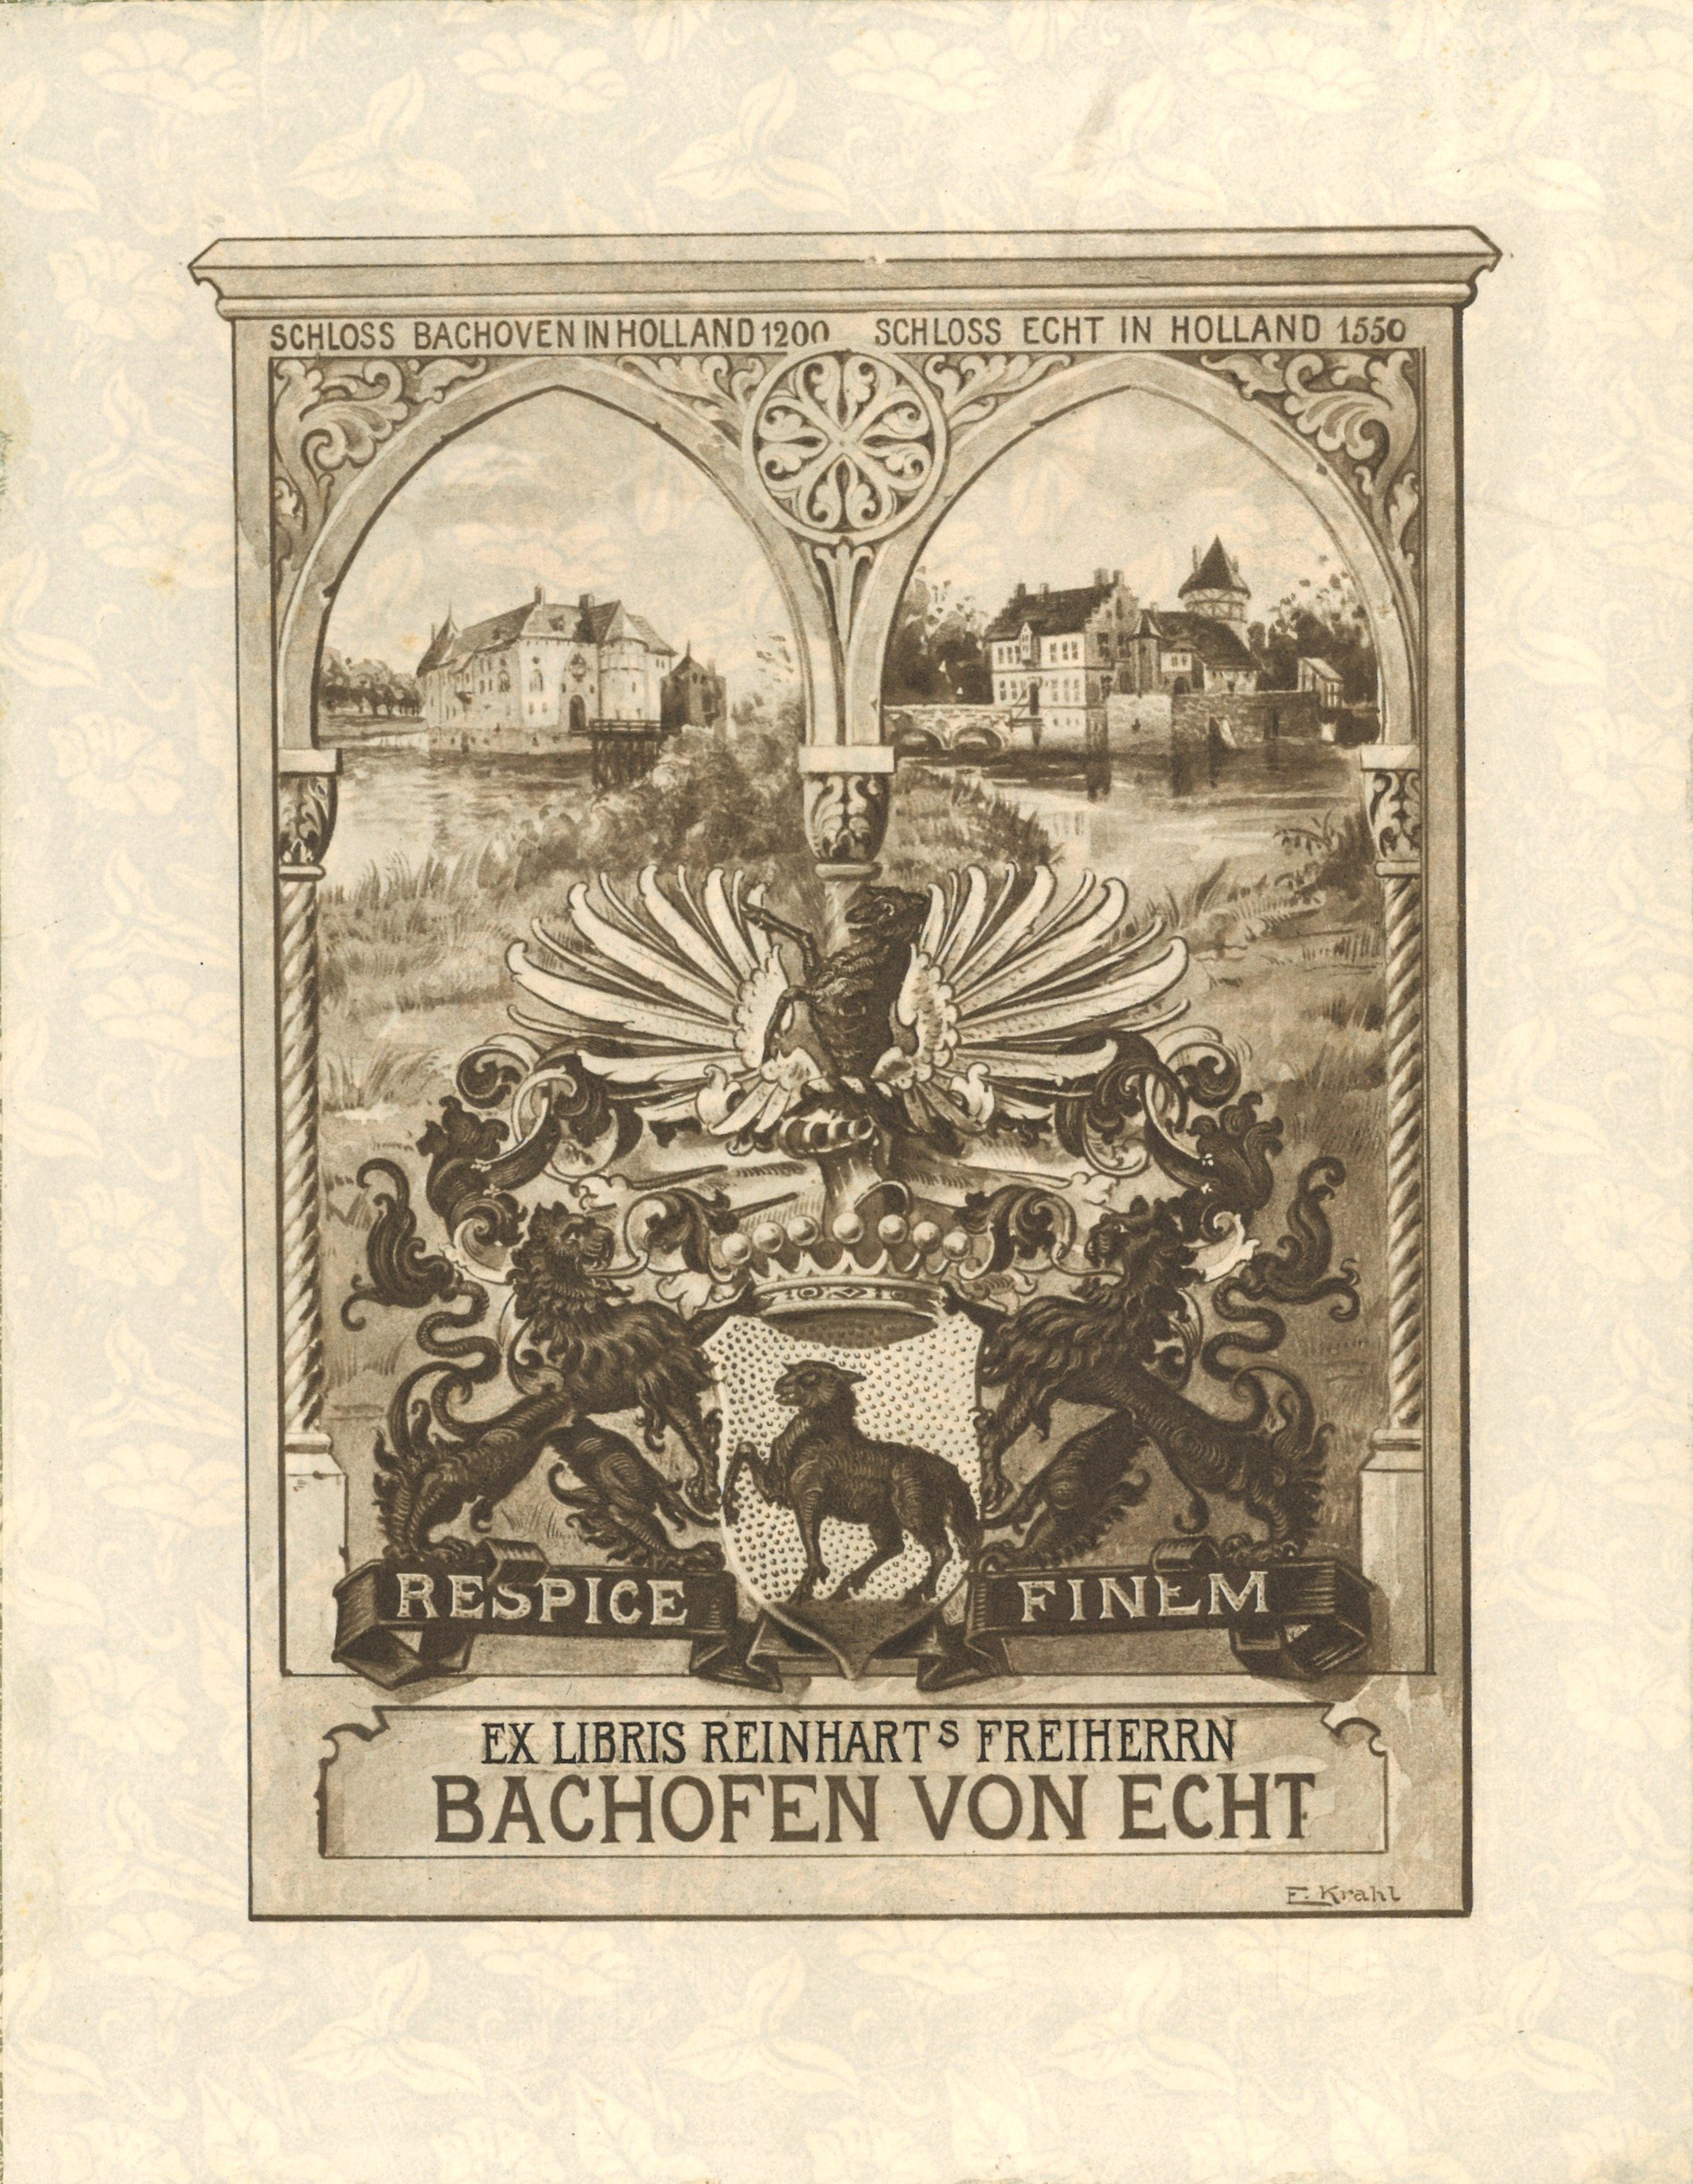 Exlibris Reinhart Frhr. Bachofen von Echt (Landesgeschichtliche Vereinigung für die Mark Brandenburg e.V. CC BY)